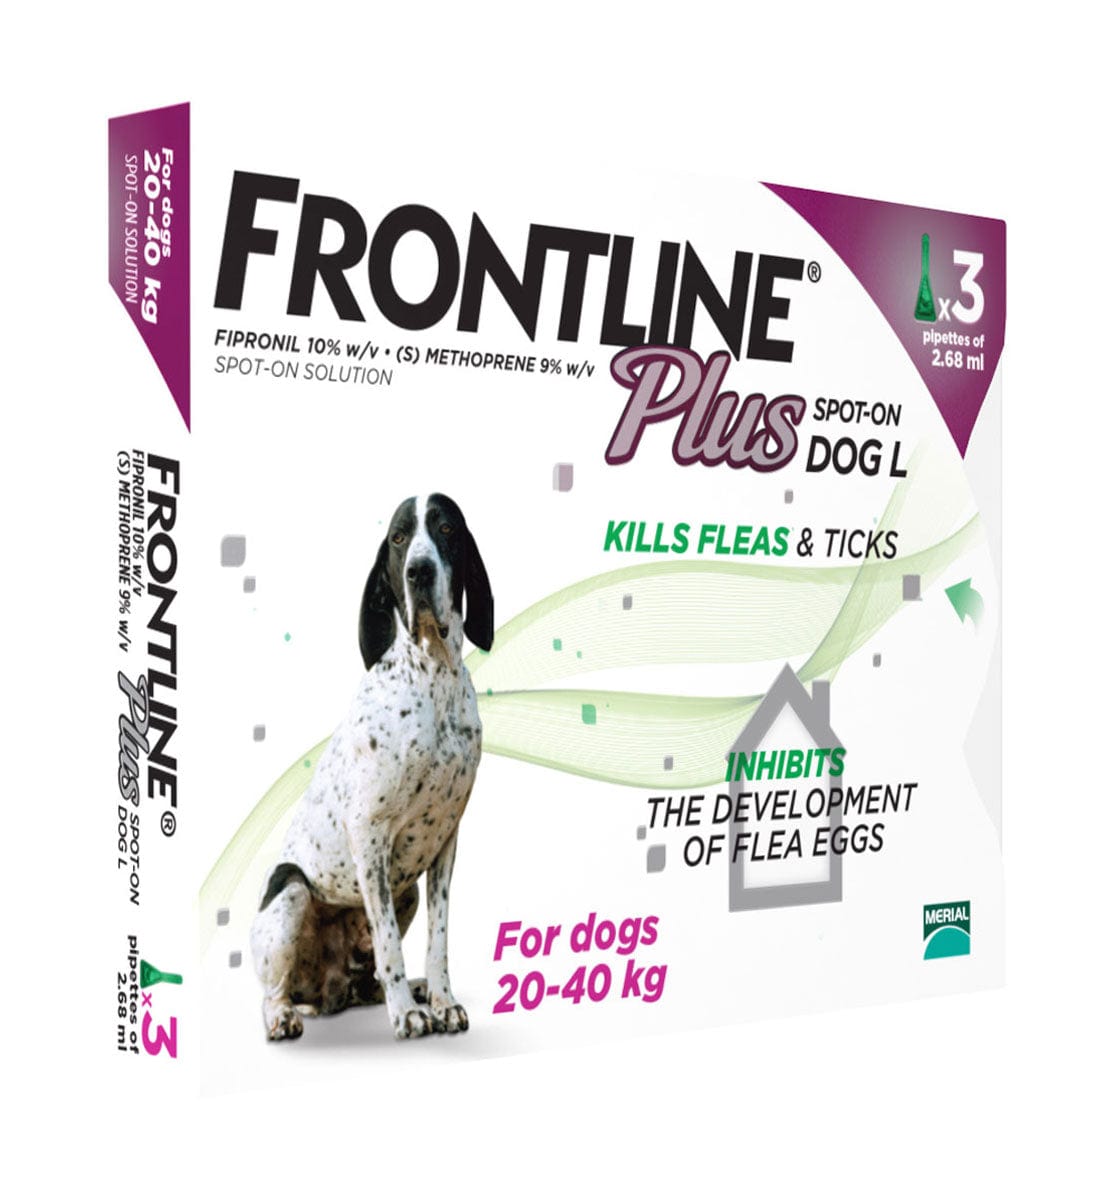 Frontline plus - dog